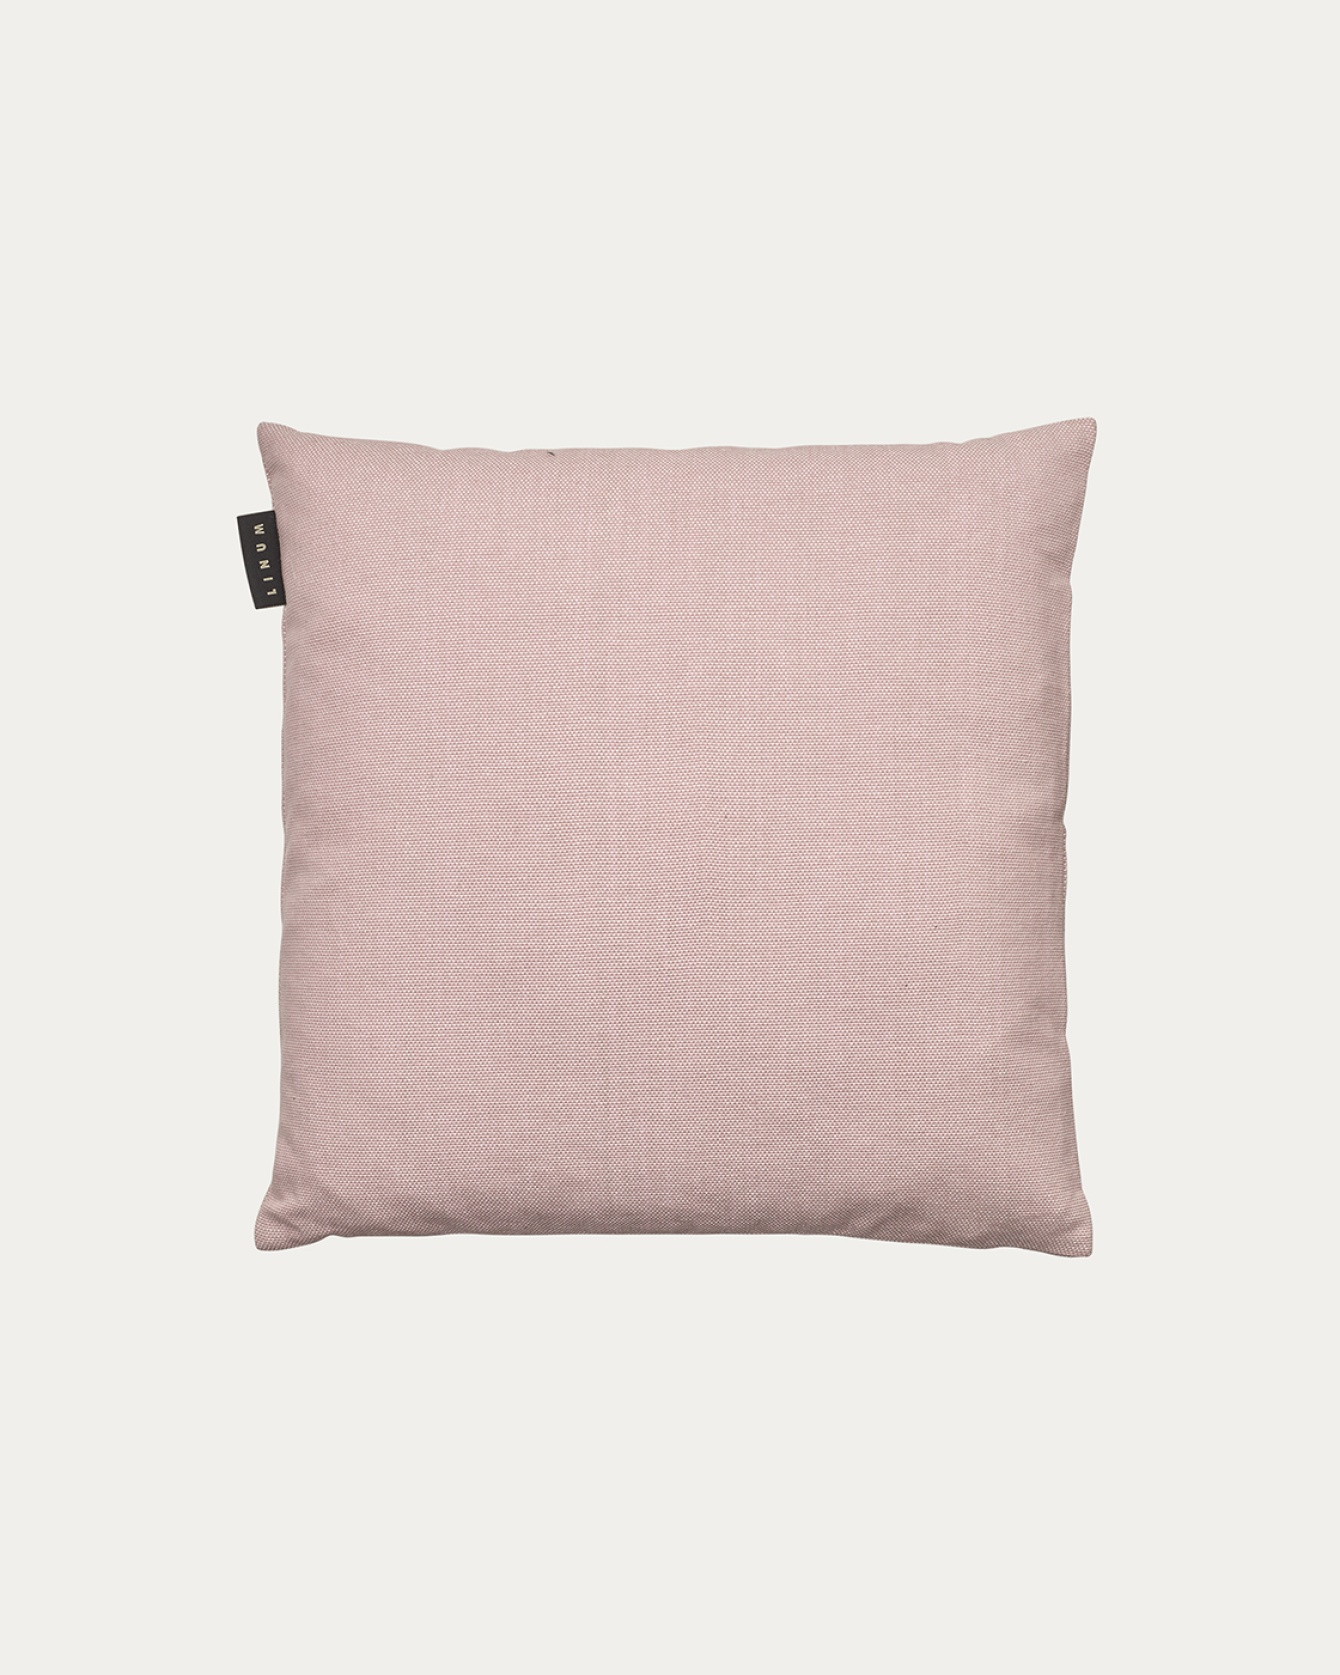 Image du produit housse de coussin PEPPER rose poudré en coton doux de LINUM DESIGN. Facile à laver et durable pendant des générations. Taille 40 x 40 cm.